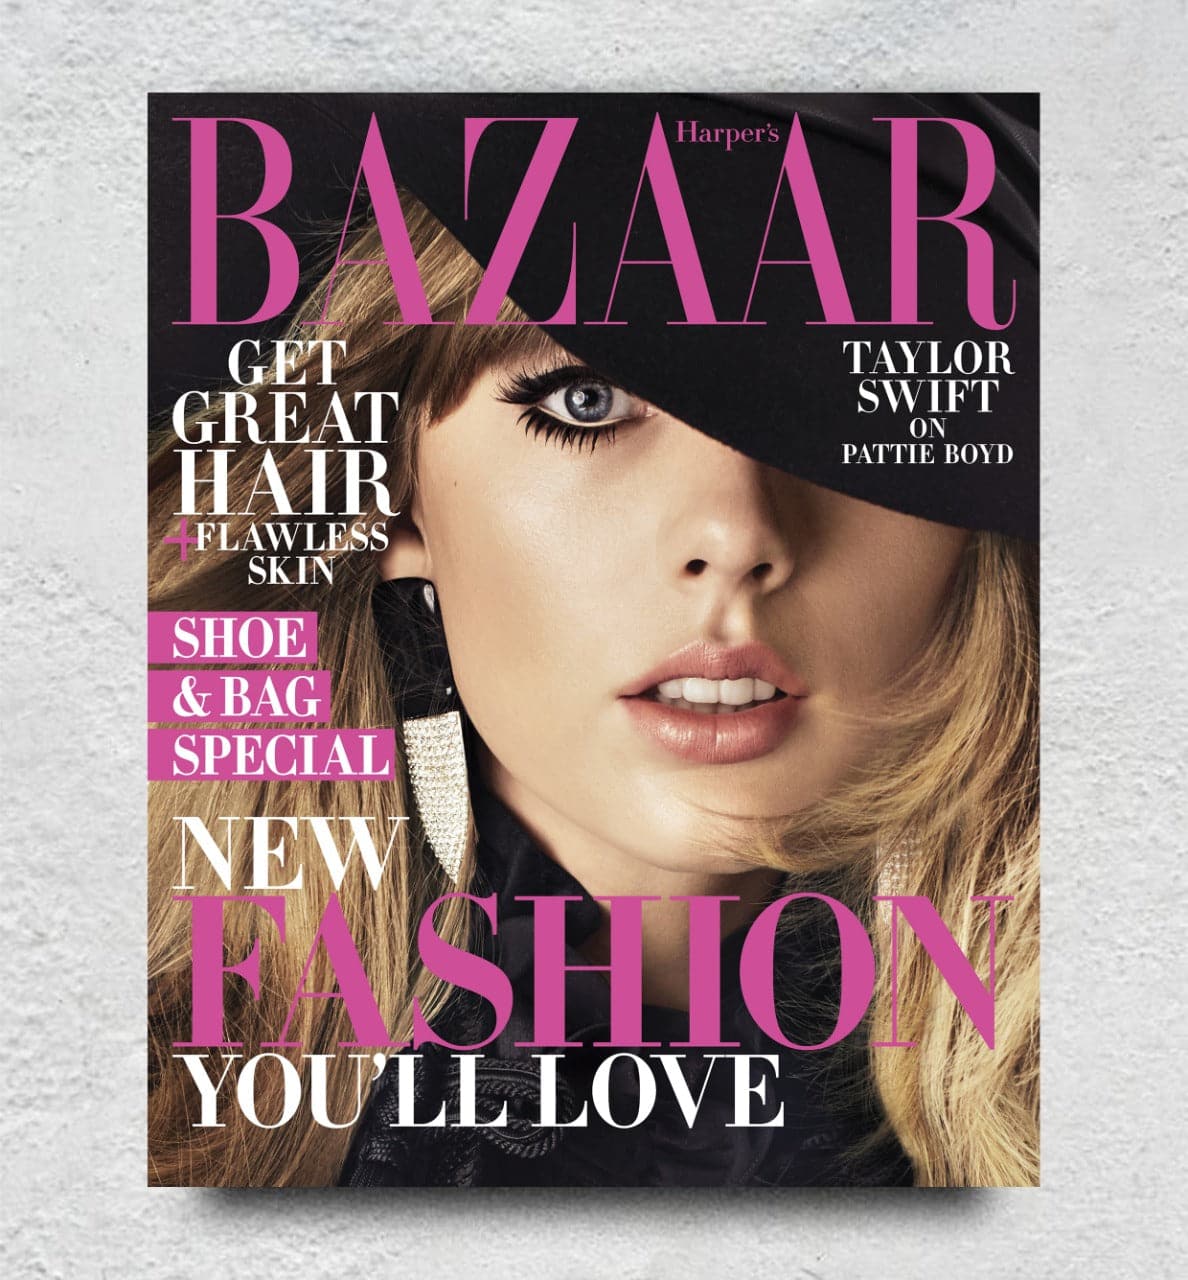 taylor swift Singer - Harper's Bazaar